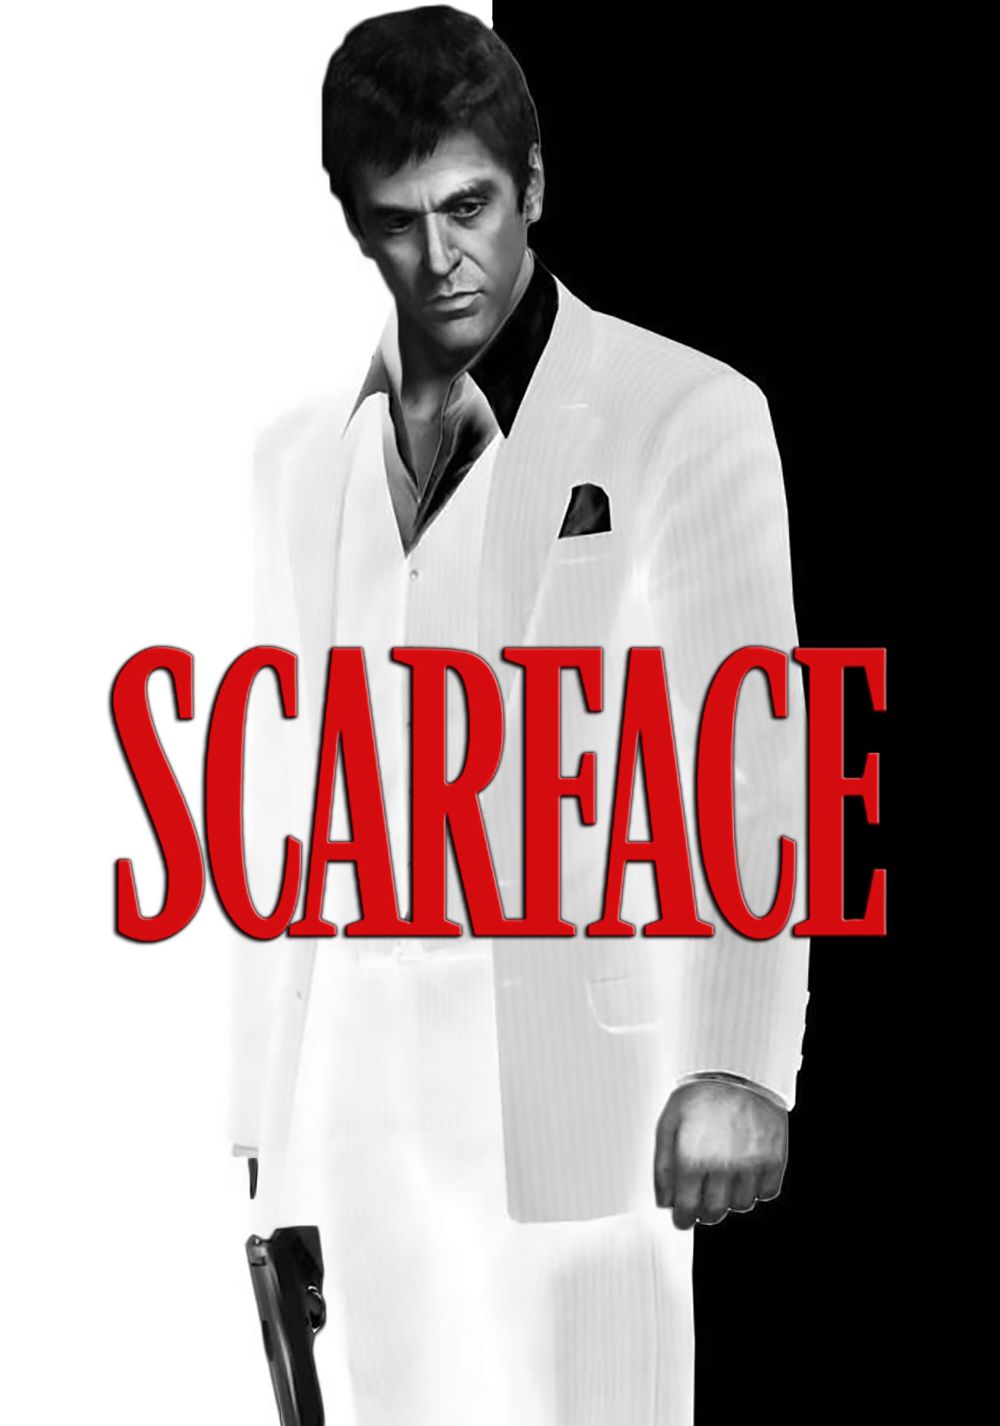 Scarface. List of Deaths